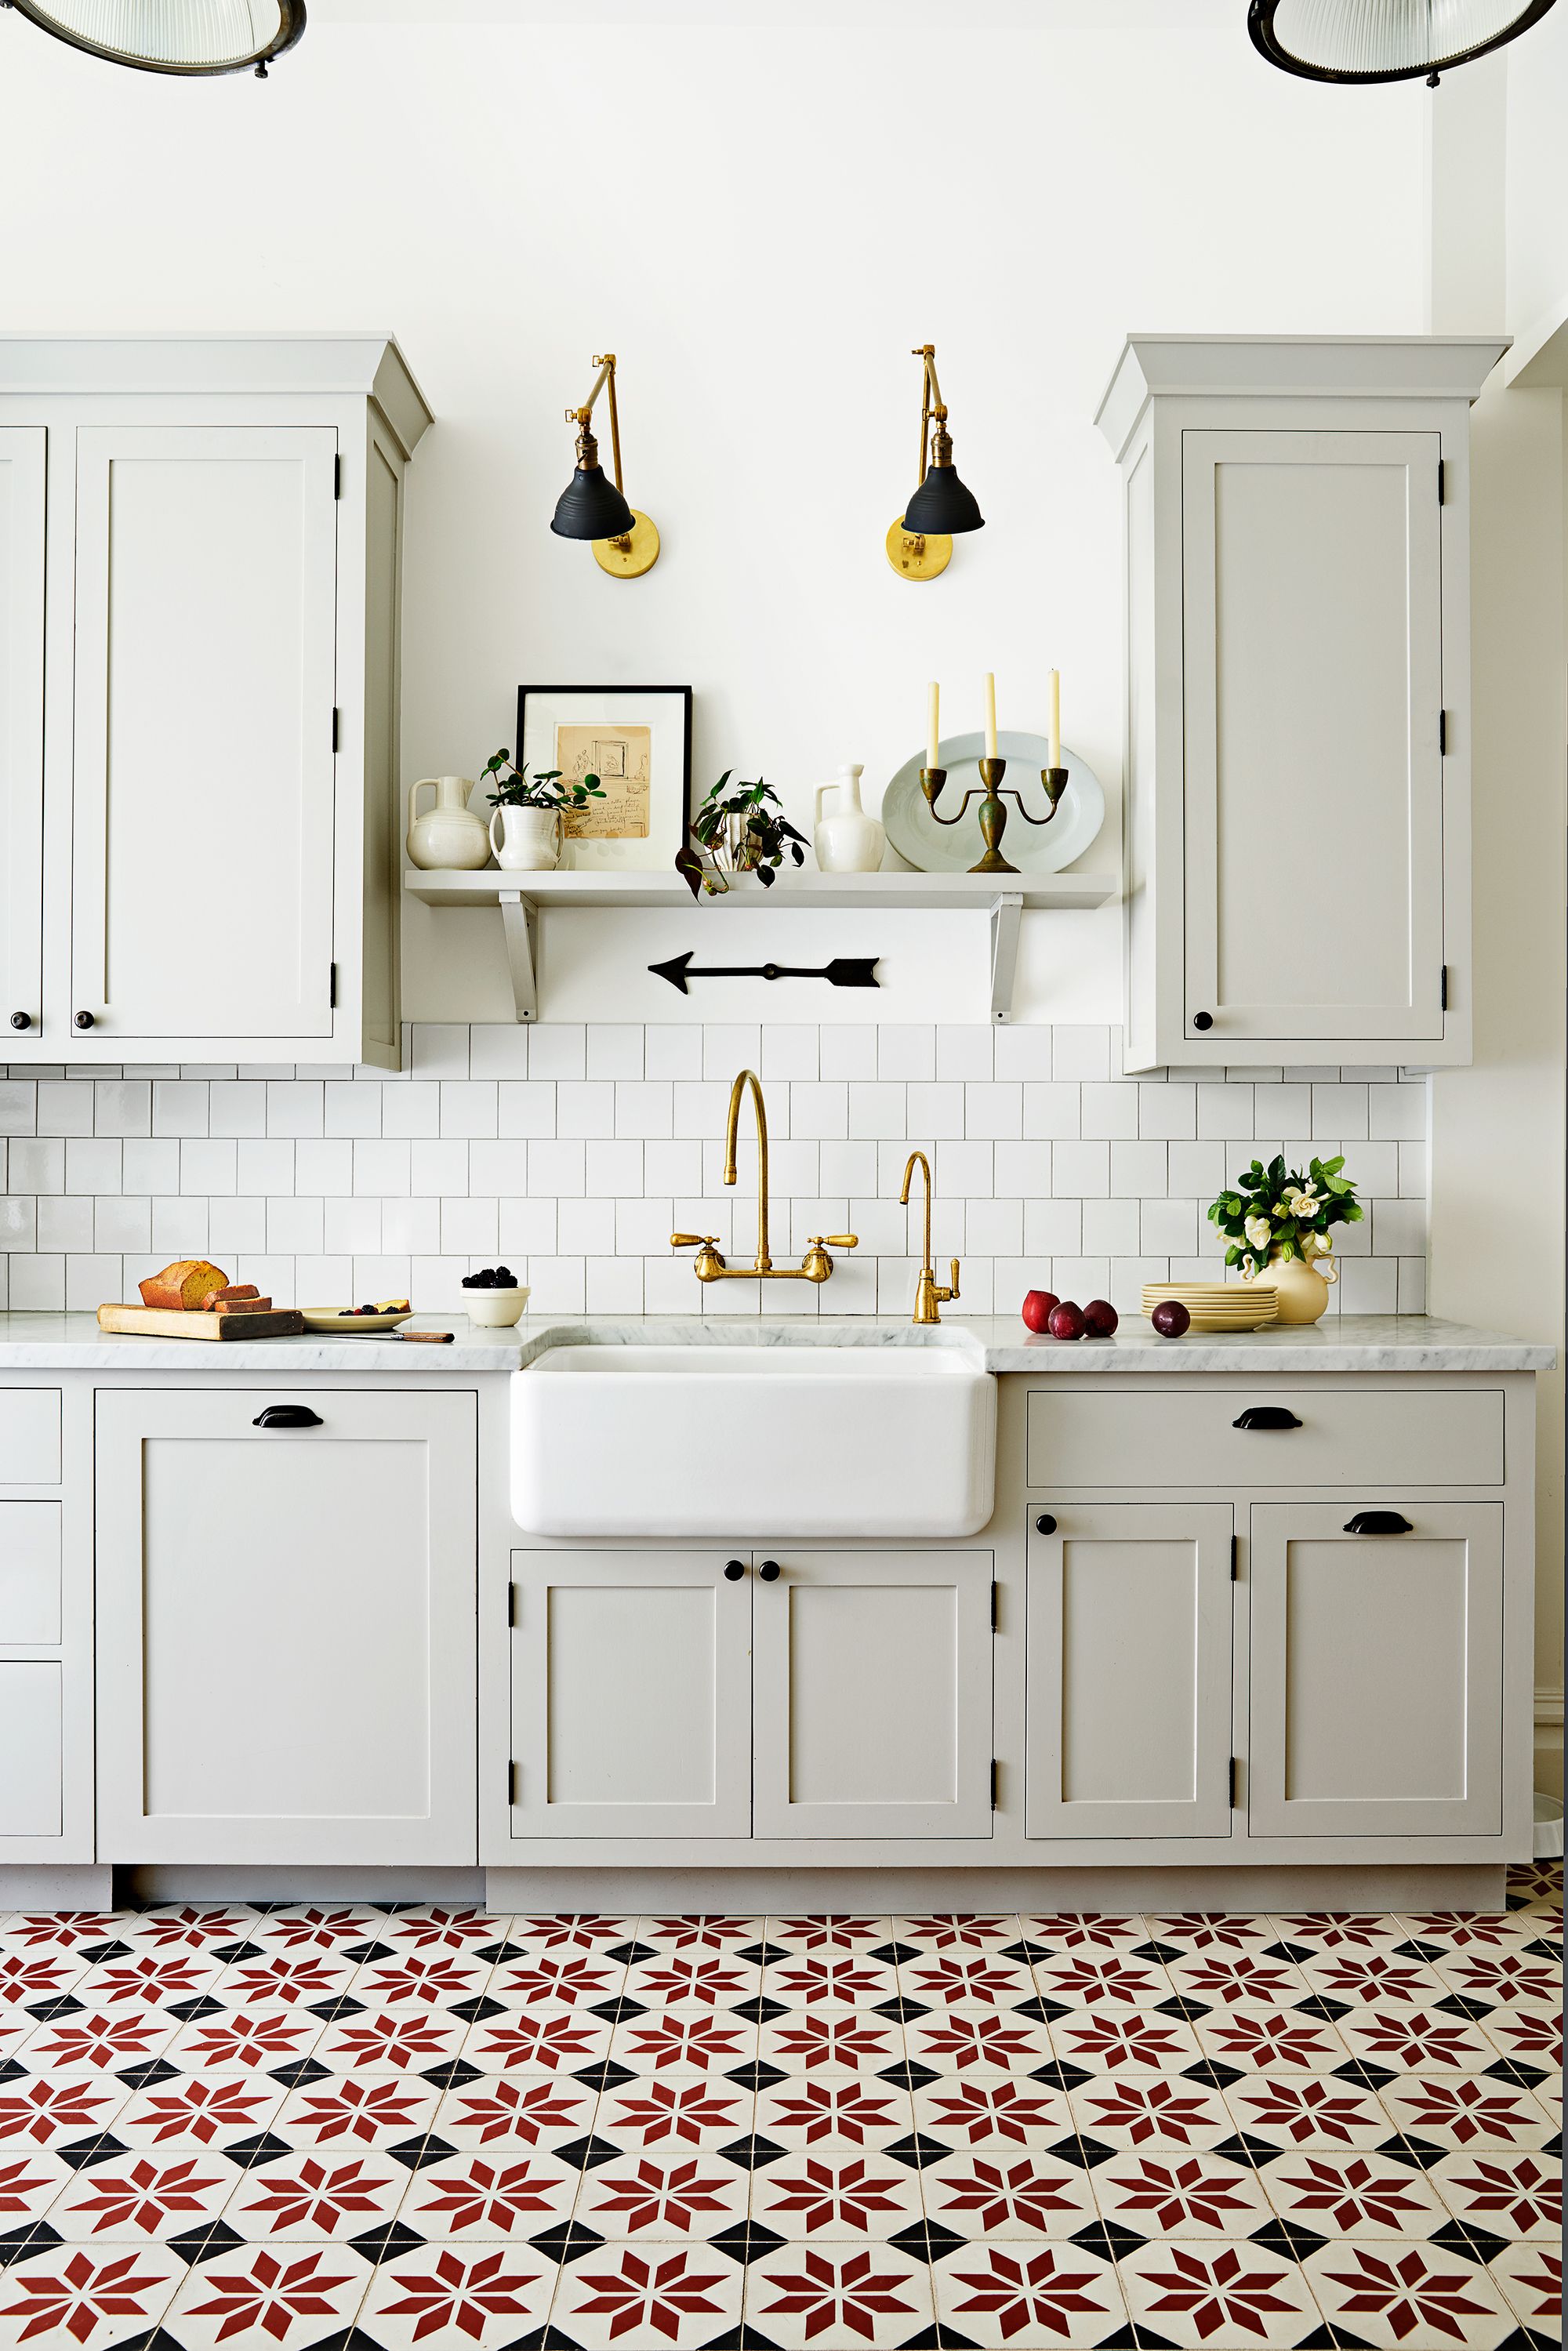 18 Modern Floor Tile Designs The Best, Ceramic Tile Kitchen Design